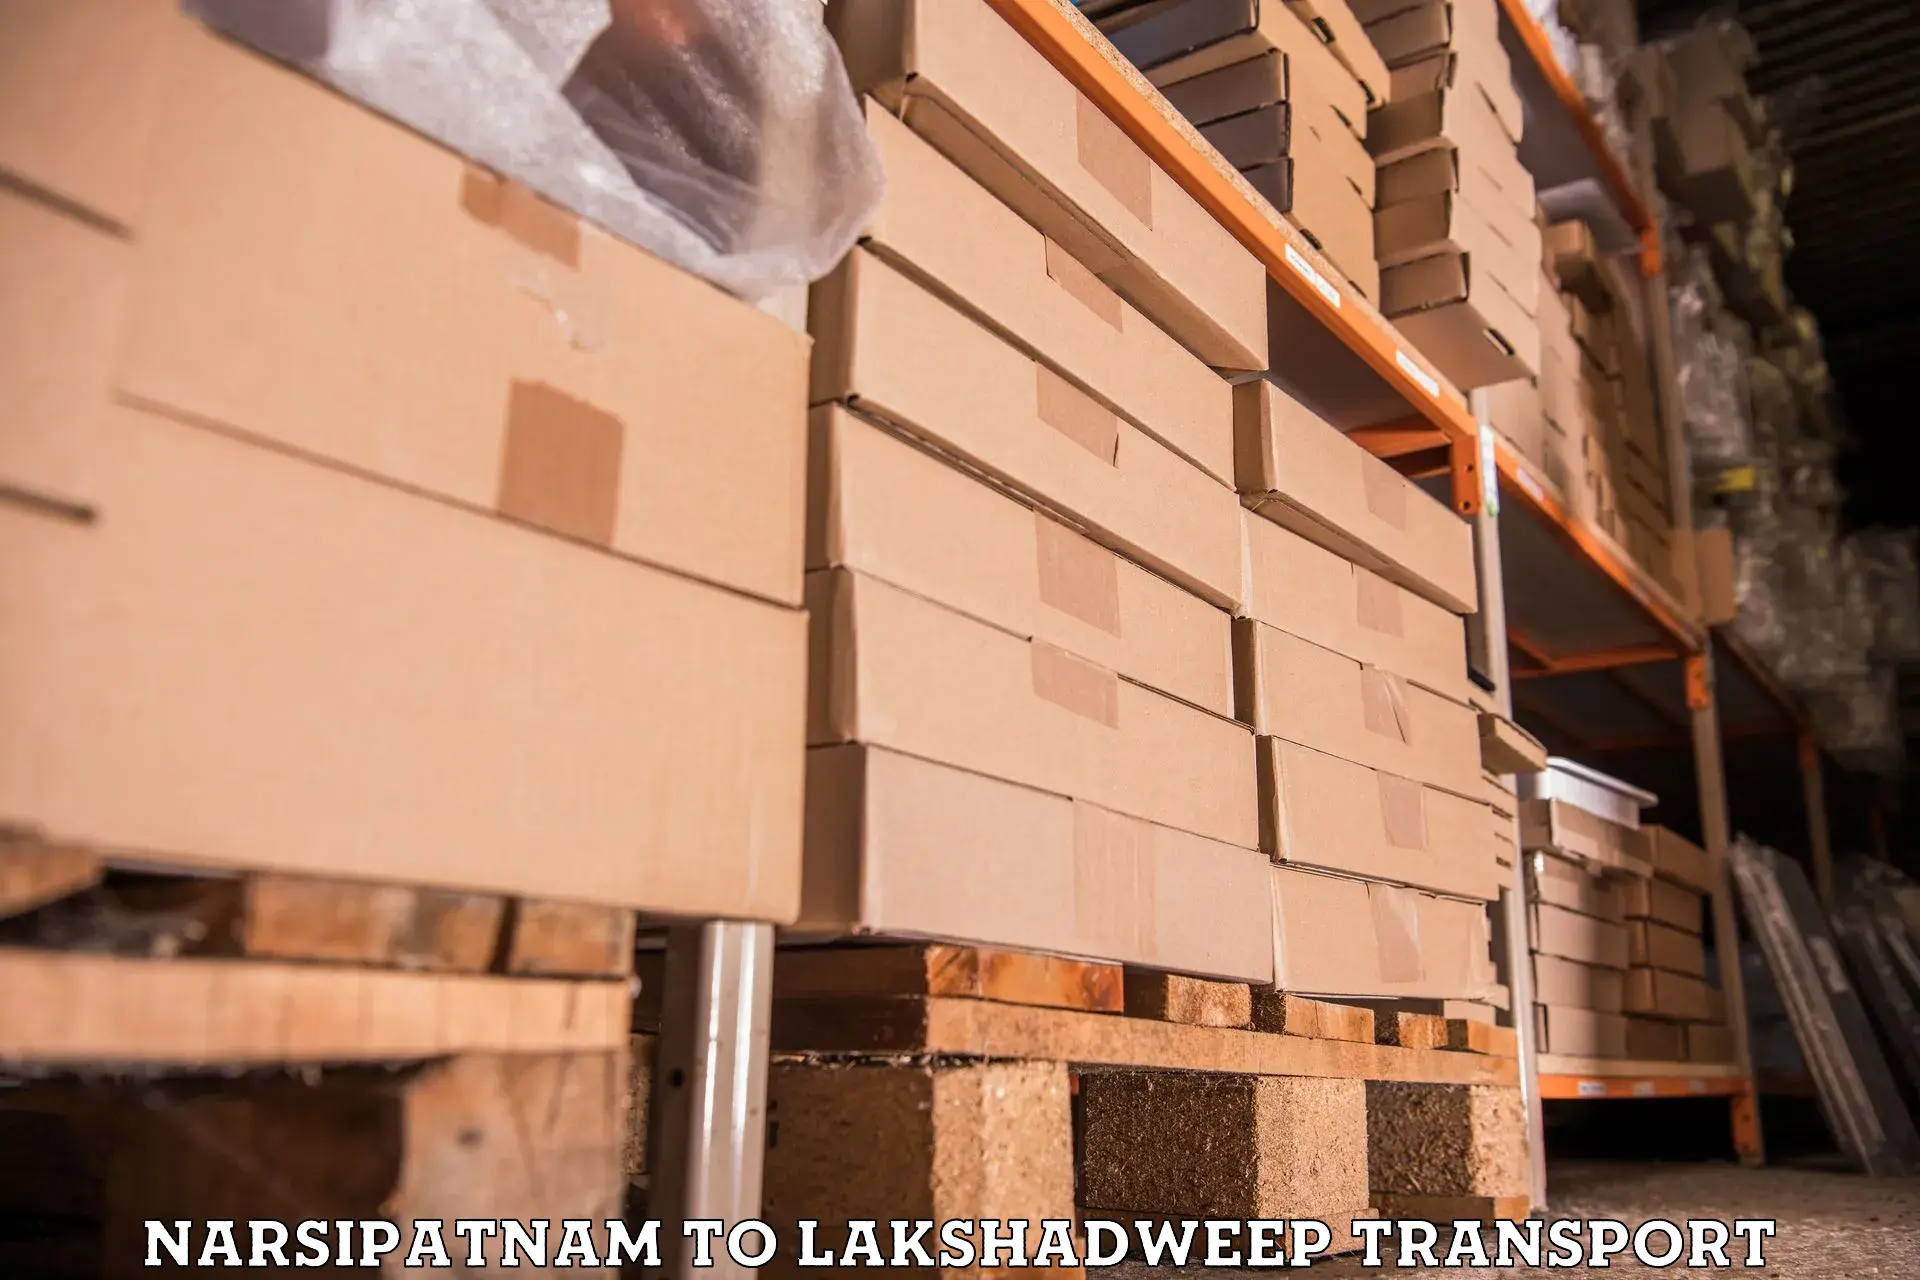 Transport in sharing Narsipatnam to Lakshadweep